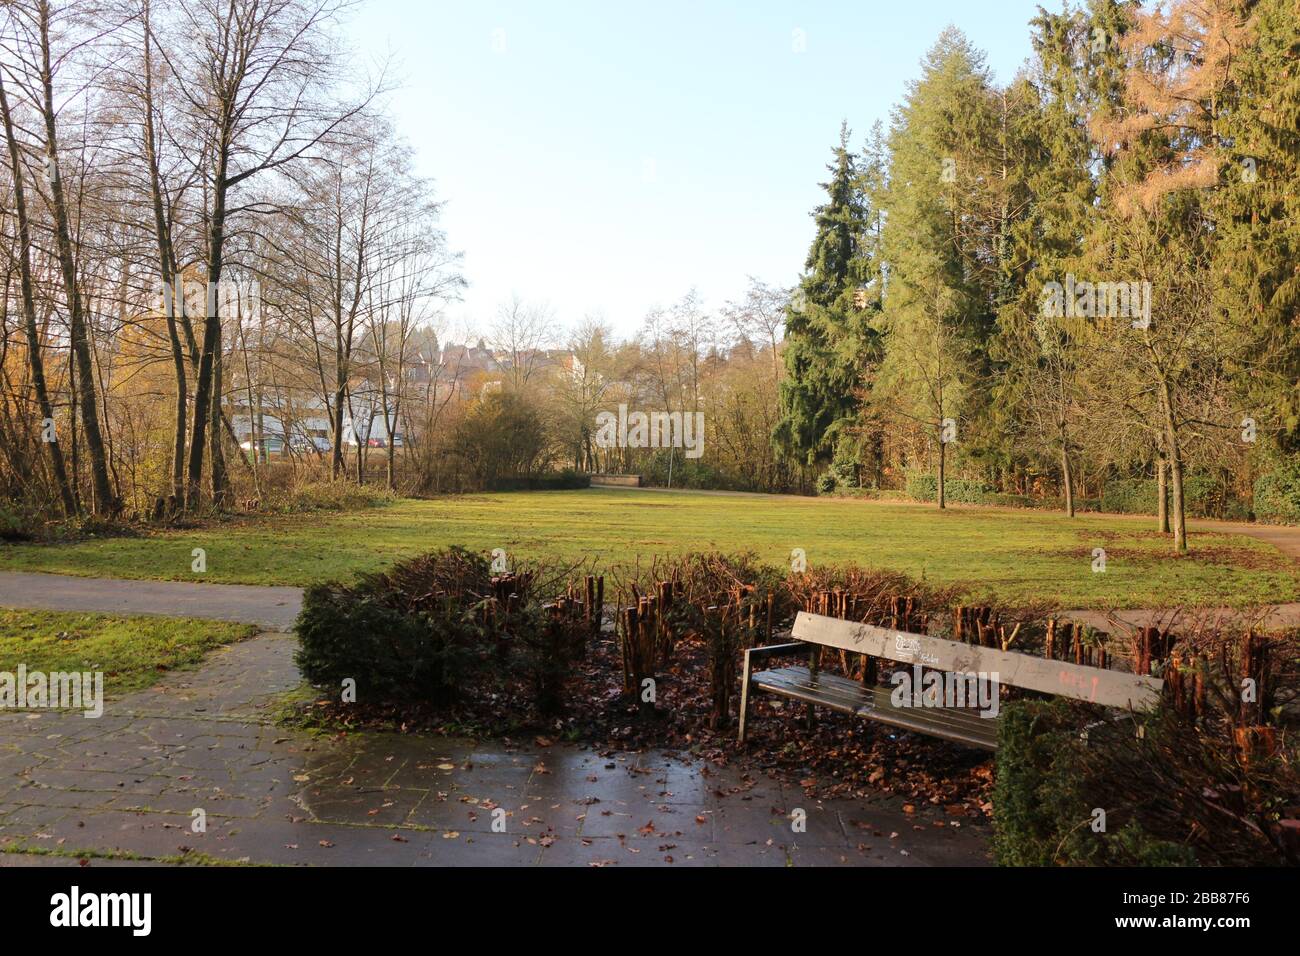 Idyllischer Park im Zentrum von Illingen im Saarland Stock Photo